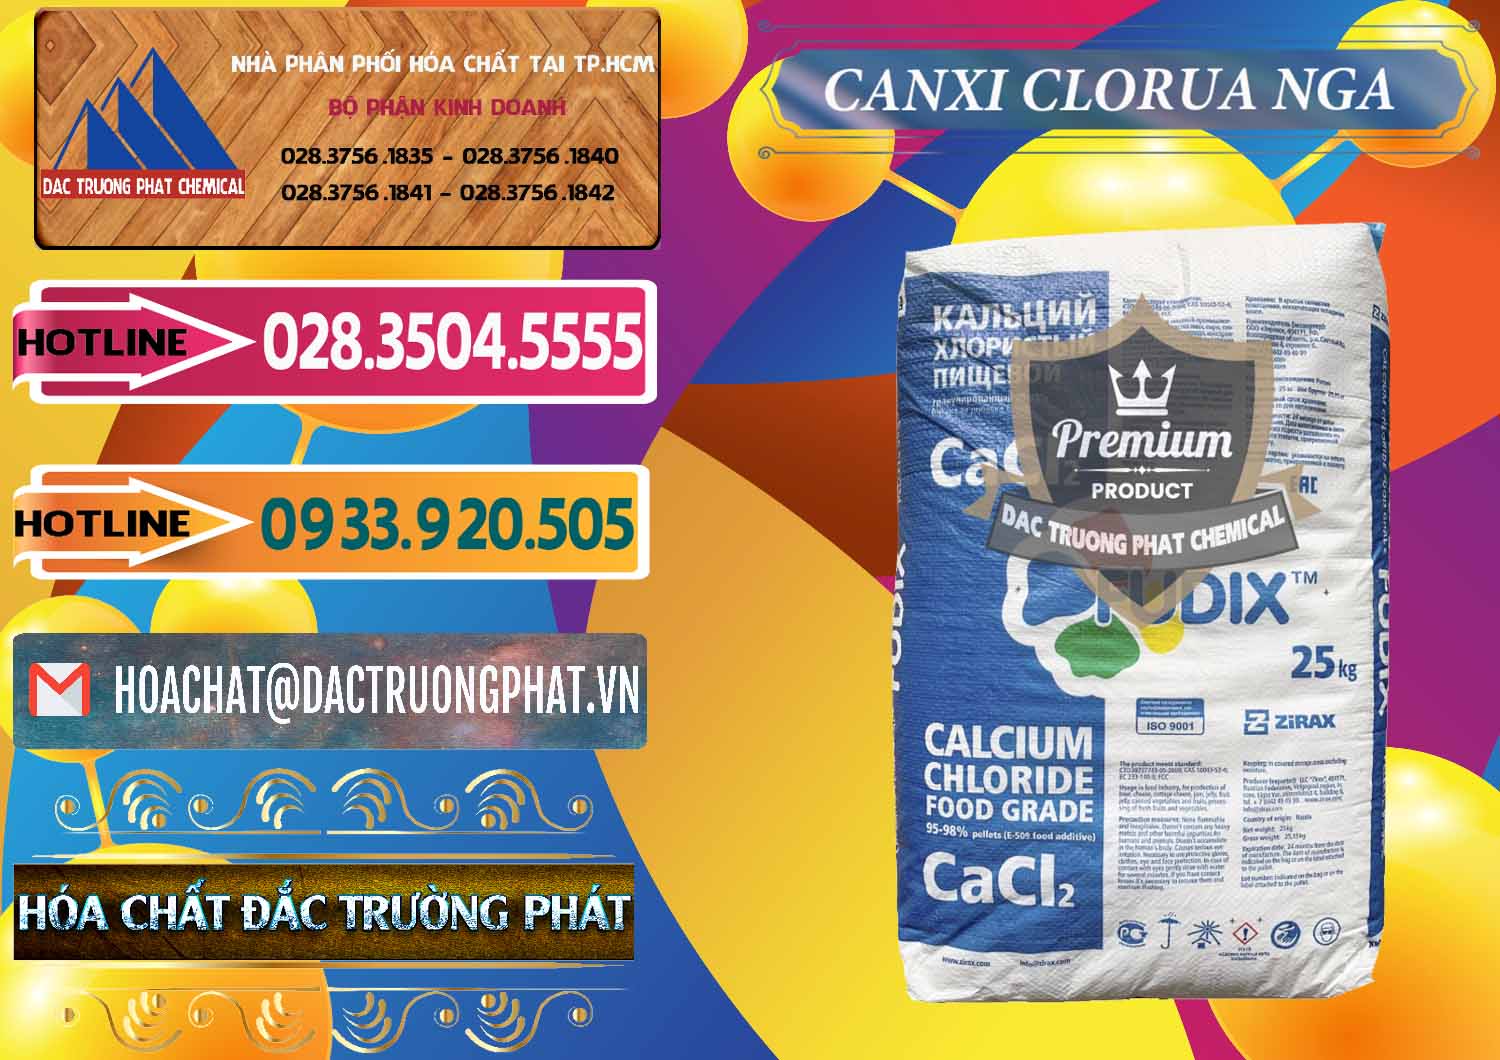 Nơi bán _ phân phối CaCl2 – Canxi Clorua Nga Russia - 0430 - Cty kinh doanh & cung cấp hóa chất tại TP.HCM - dactruongphat.vn